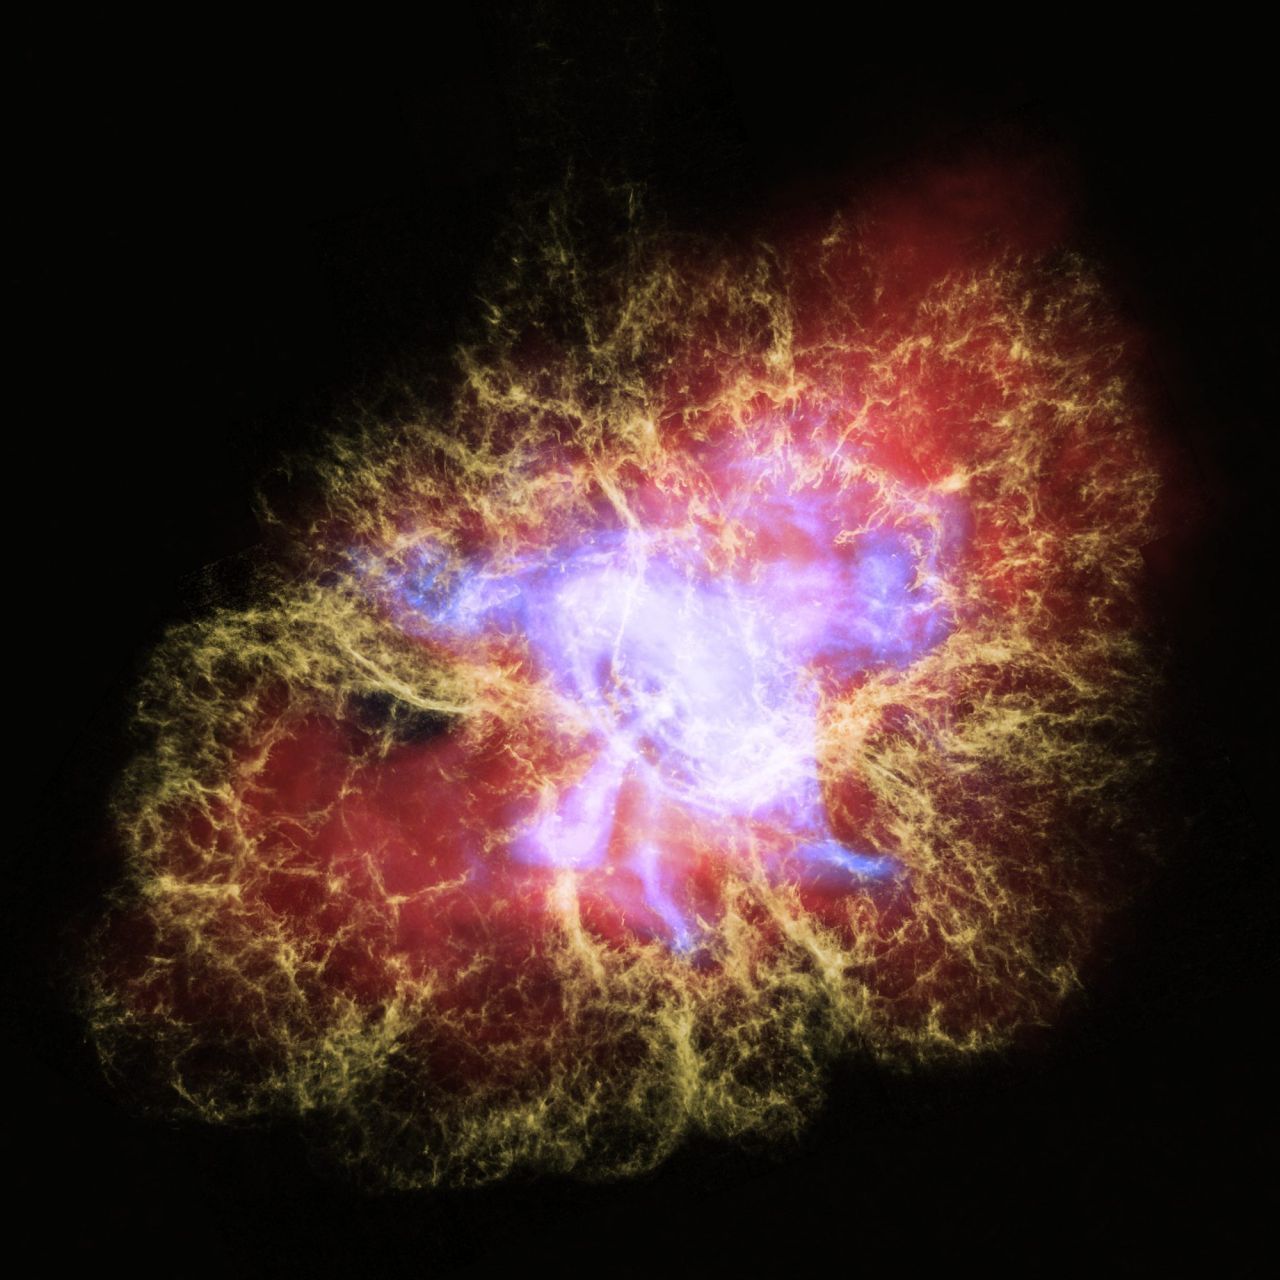 Mit viel Fantasie kann man vielleicht erkennen, warum diese Formation die "Crab Nebula" genannt wird. Das Foto ist in einer Zusammenarbeit zwischen einem Teleskop auf der Erde und Hubble entstanden und zeigt einen Neutronenstern. Diese Sterne haben eine ganz besonders hohe Dichte. Ein Teelöffel der Materie dürfte mehrere Milliarden Tonnen wiegen. Unvorstellbar.